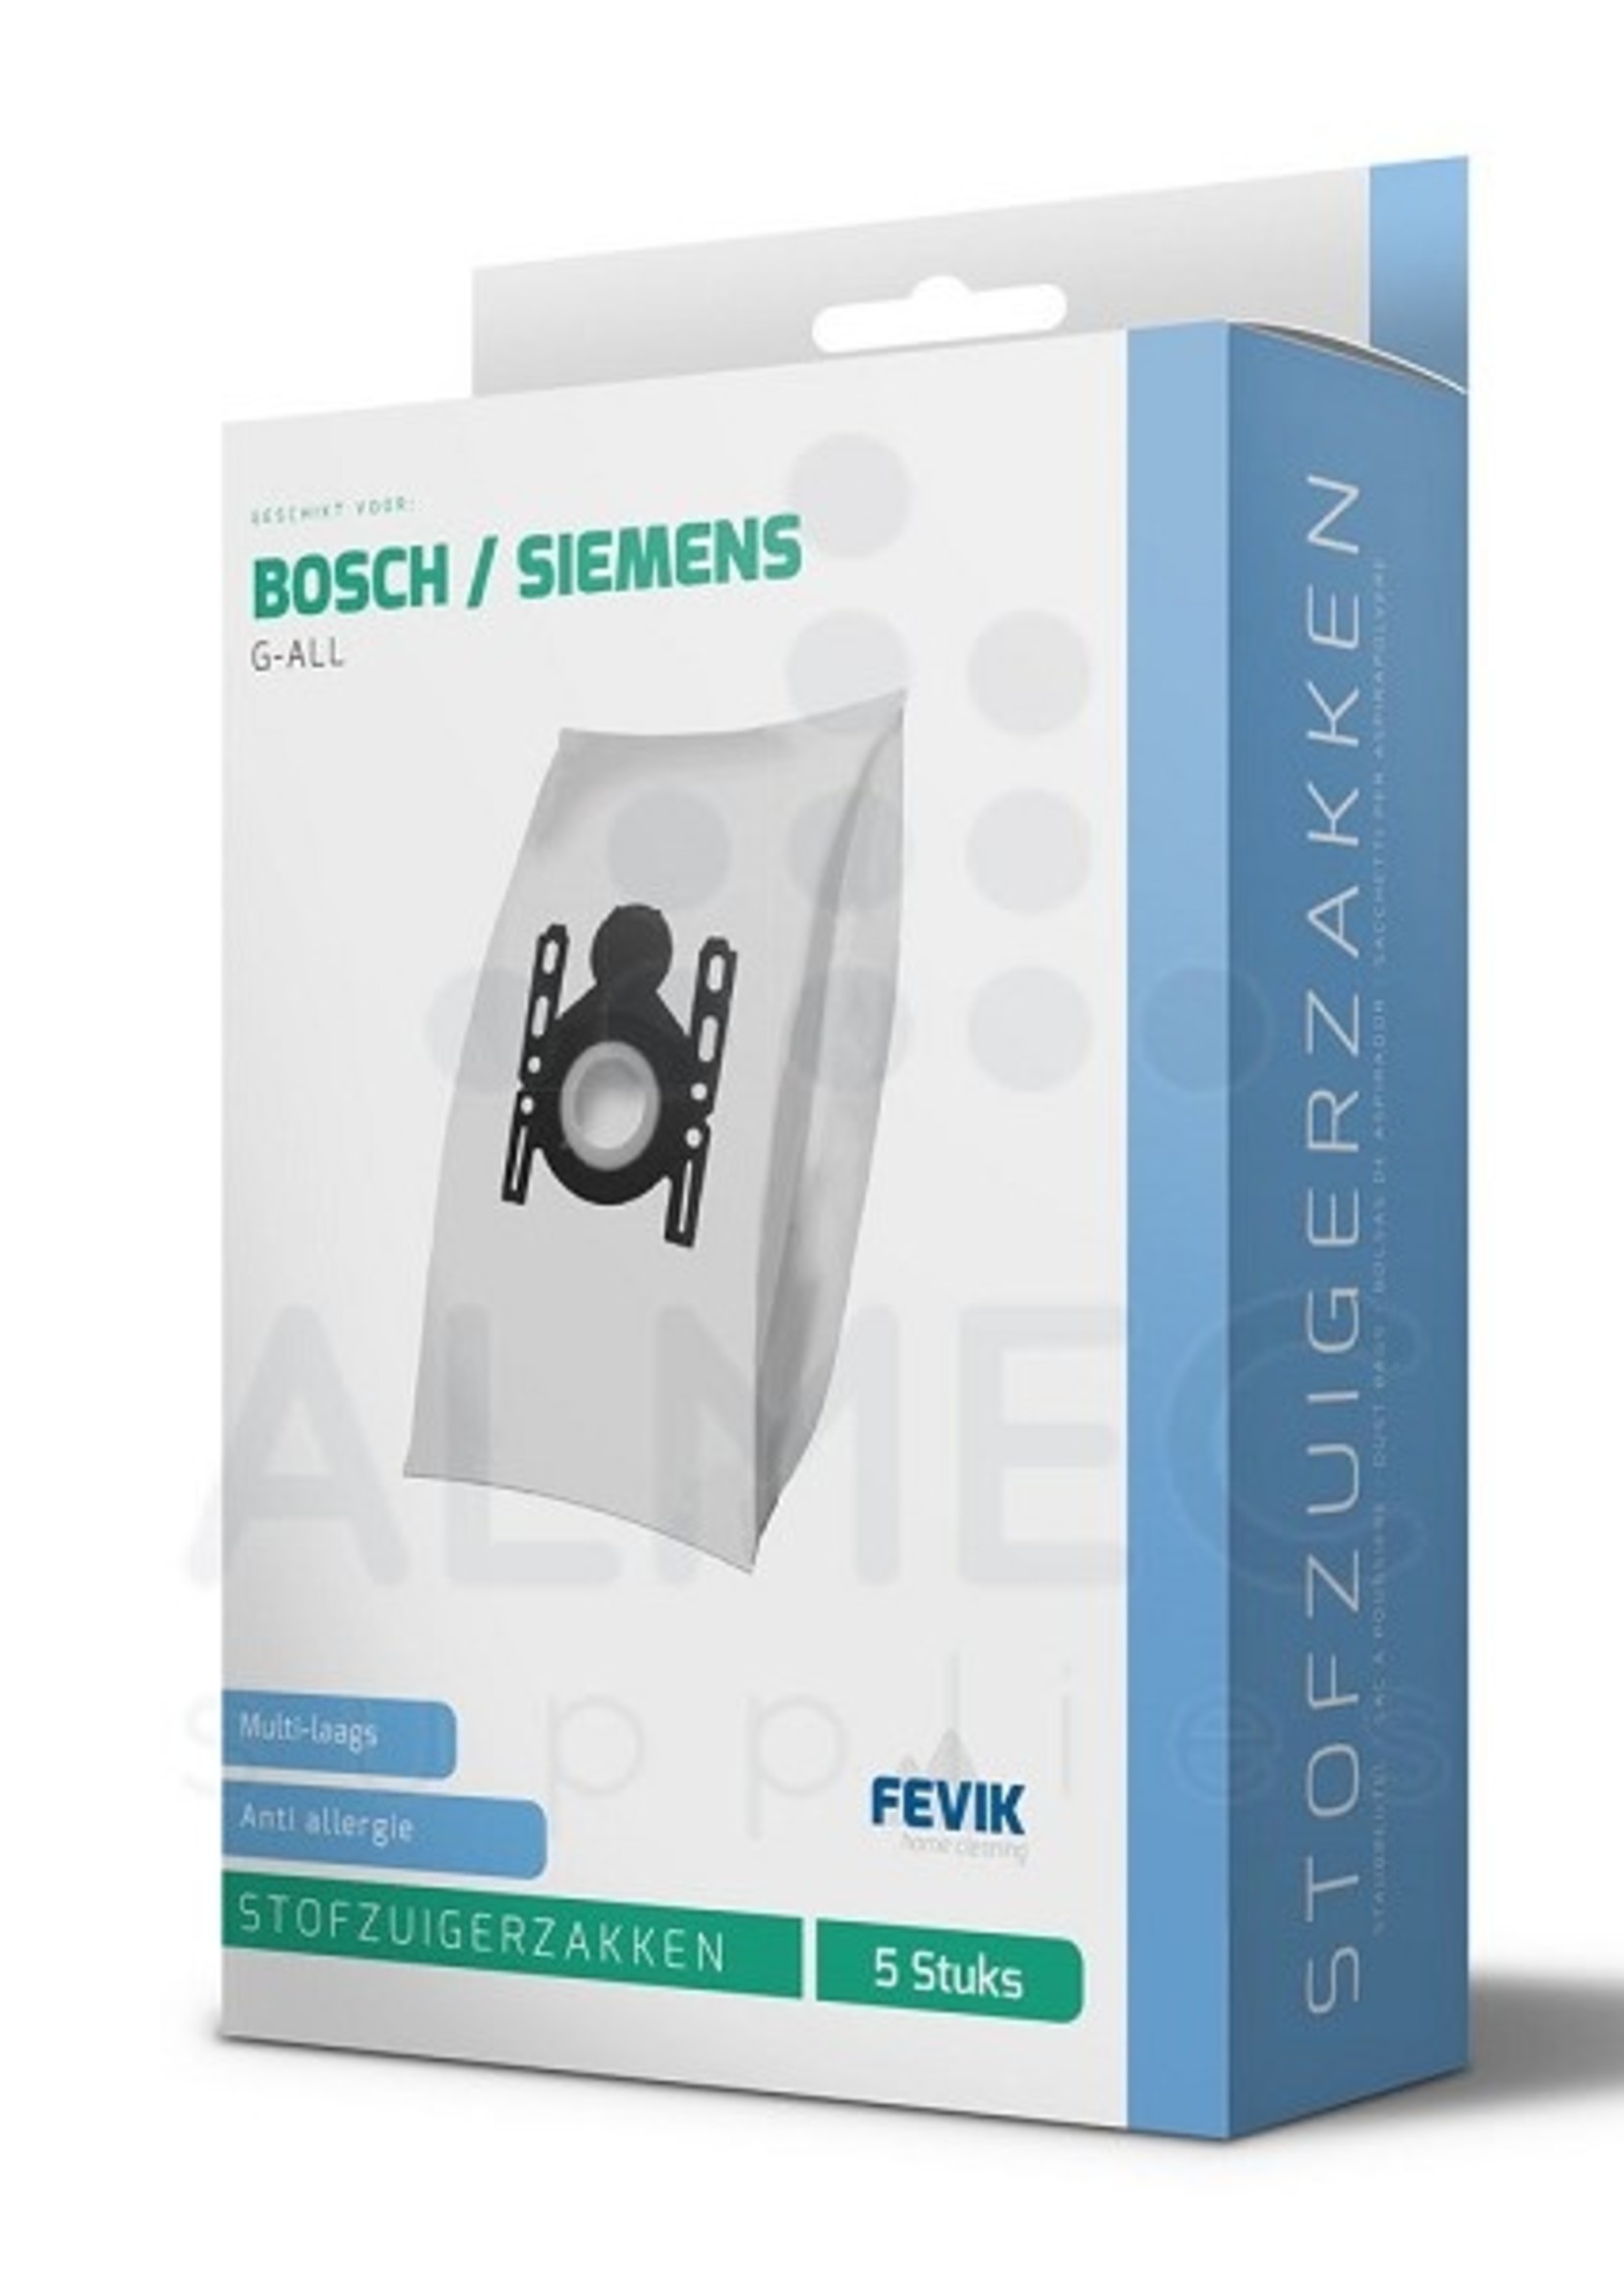 Fevik Stofzuigerzakken Bosch / Siemens G-All 3-D pak a 5 stuks